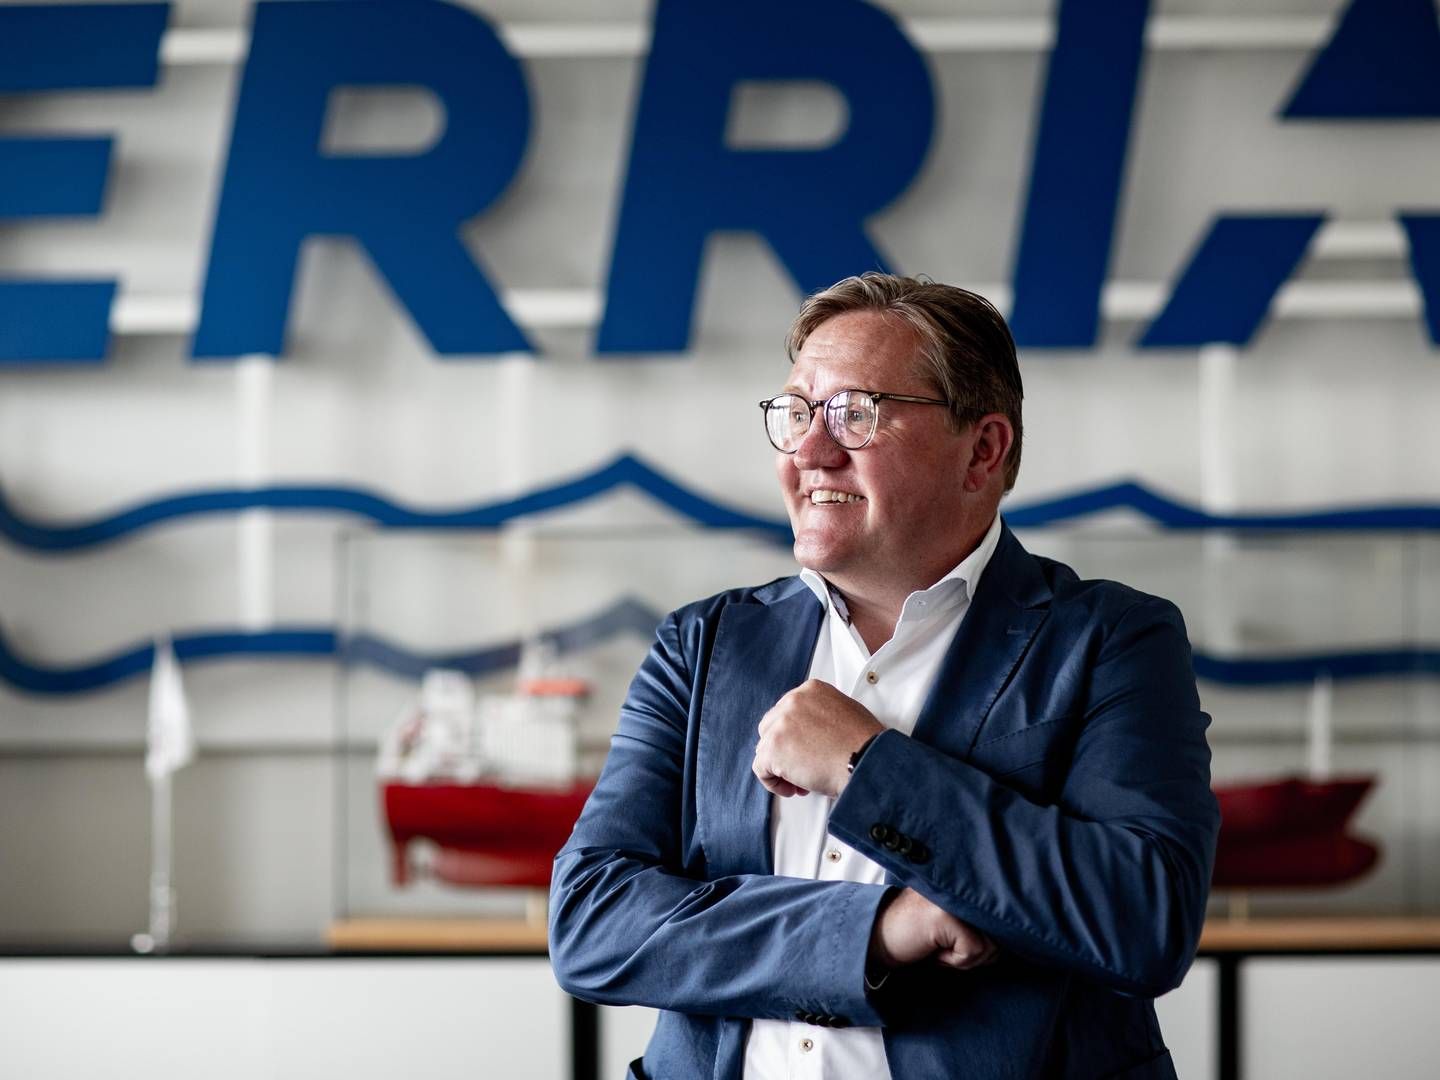 Fremgang i indtjeningen har betydet, at egenkapitalen i shippingselskabet Erria igen er positiv, oplyser Henrik N. Andersen, adm. direktør i selskabet. | Photo: Pr Foto